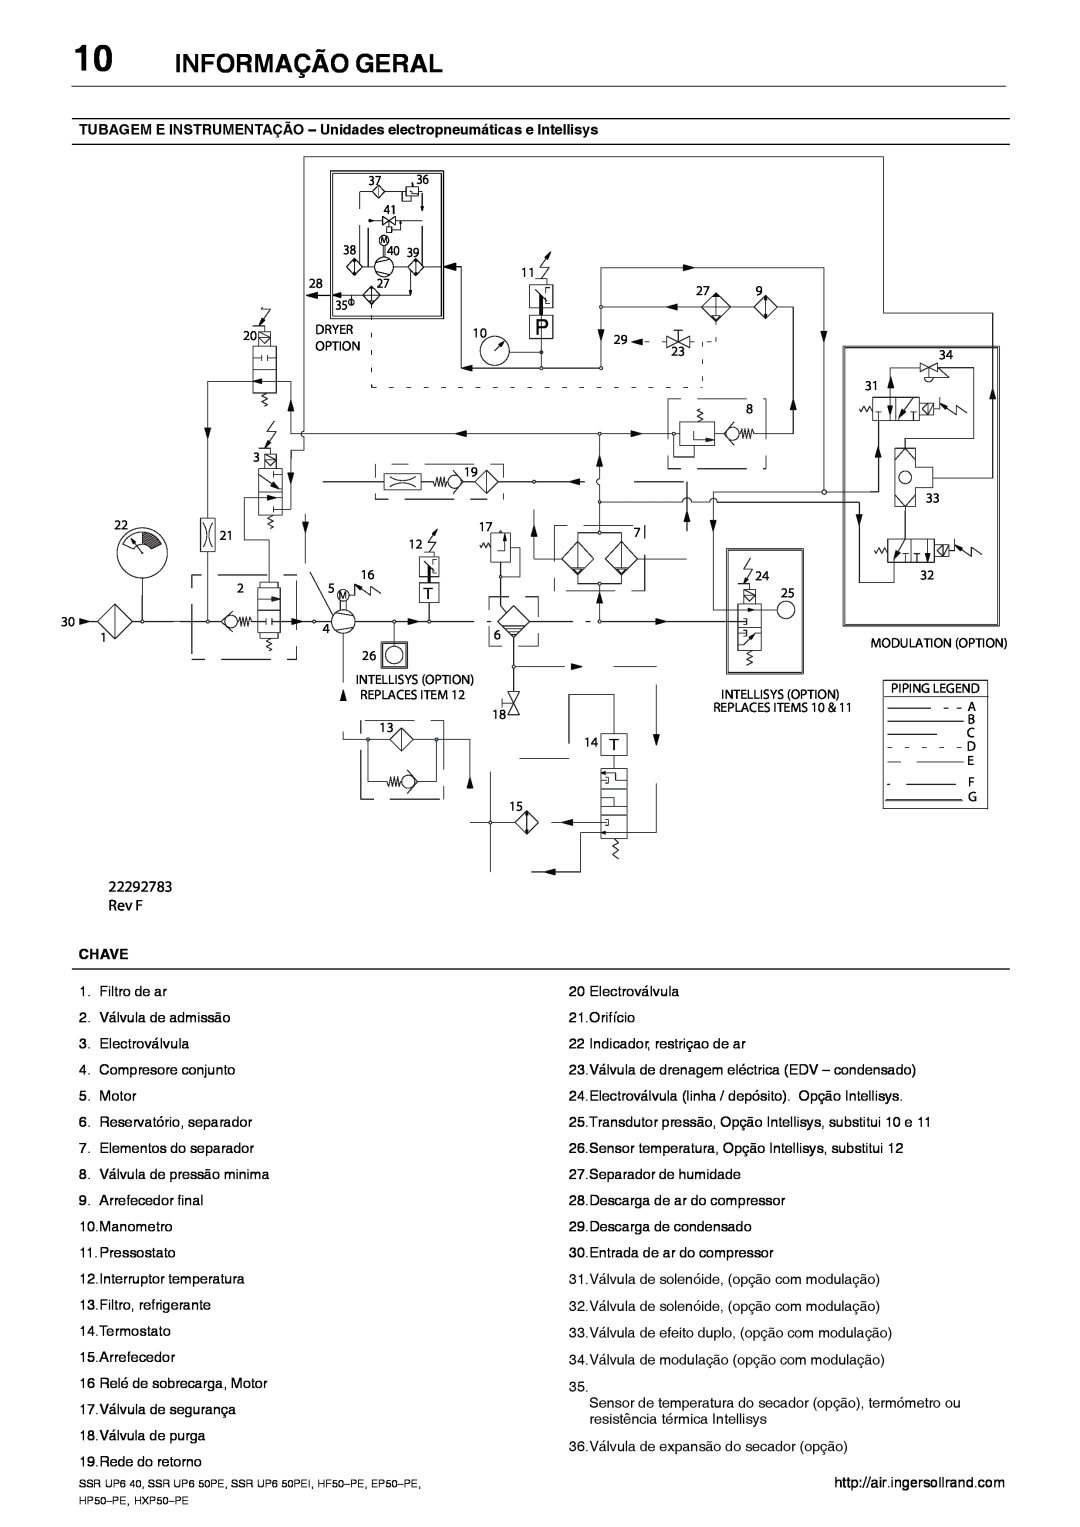 Ingersoll-Rand HXP50-PE manual Informação Geral, TUBAGEM E INSTRUMENTAÇÃO - Unidades electropneumáticas e Intellisys, Rev F 